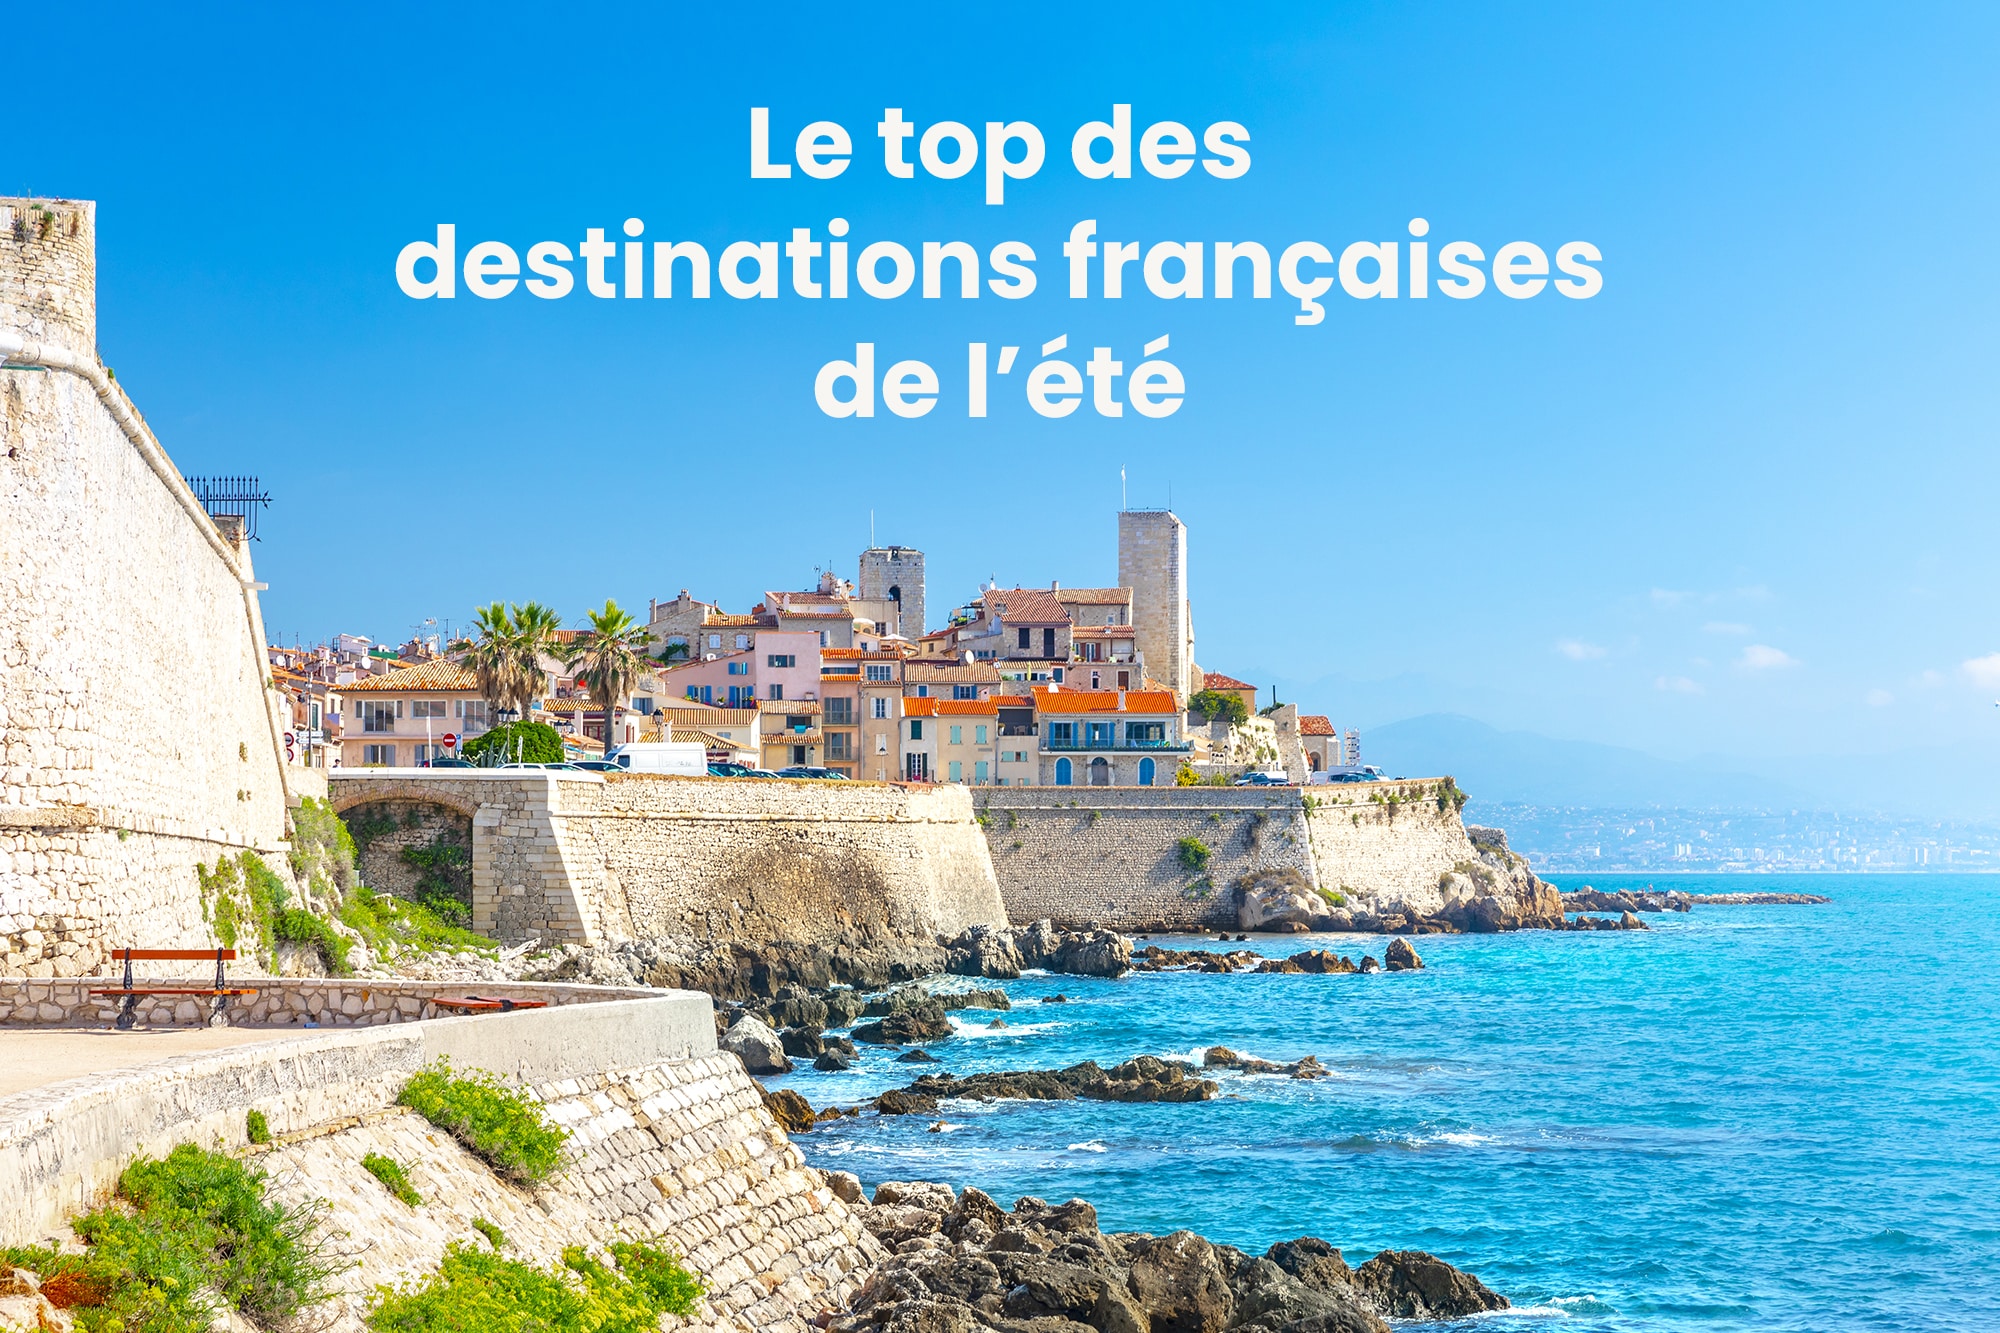 Le top des destinations françaises de l'été